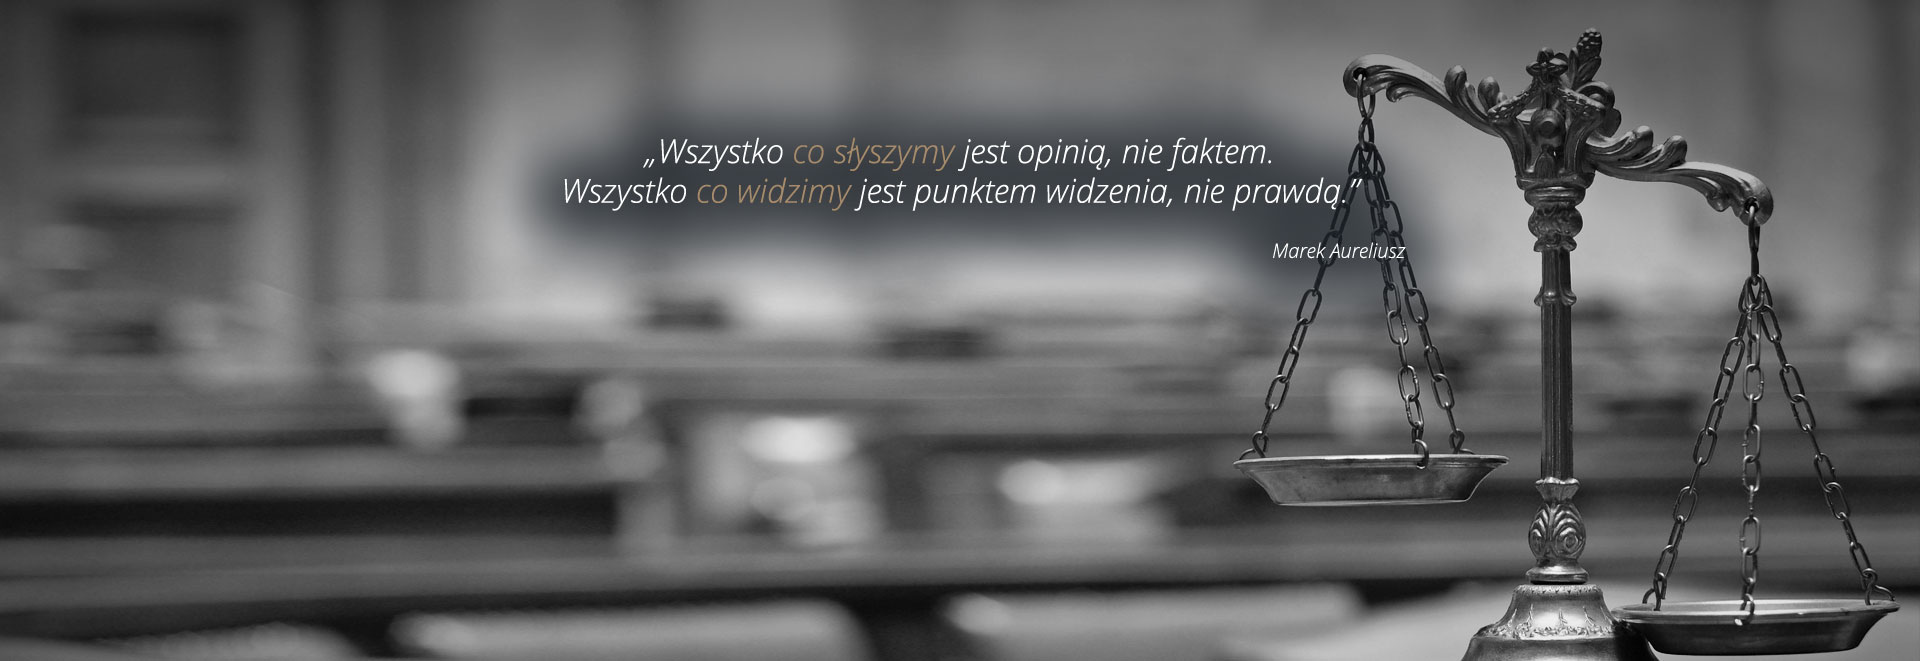 ULTIMA RATIO Sp. z o.o. – Kancelaria Prawno Dochodzeniowa | Adwokat, Księgowość, Windykacja, Spółki – Jarocin, Krotoszyn, Poznań